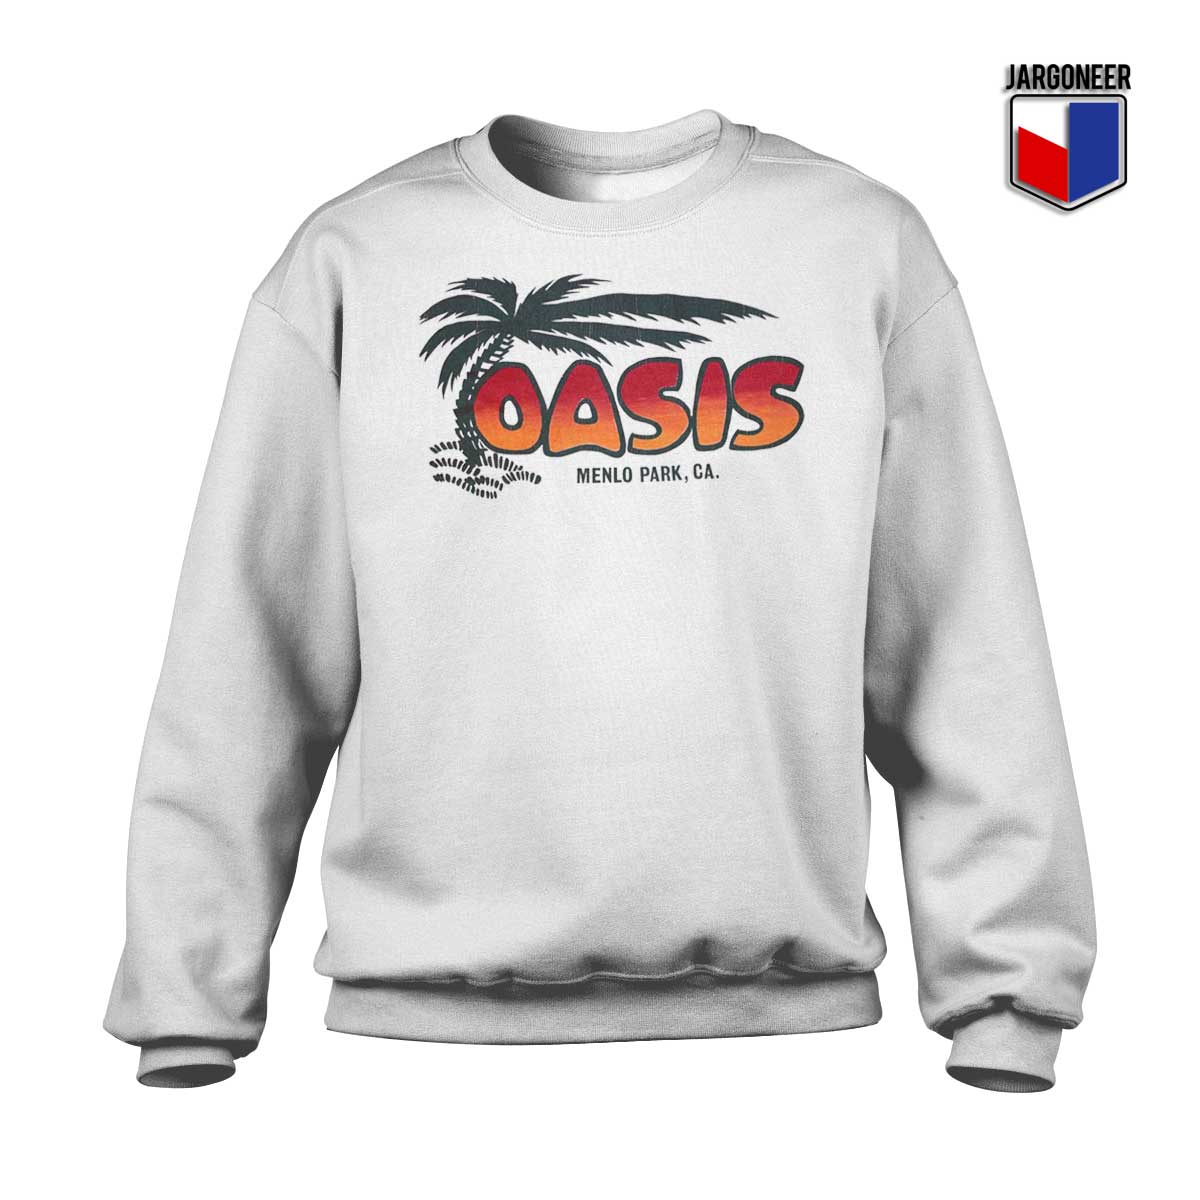 Oasis Vintage Sweatshirt - Shop Unique Graphic Cool Shirt Designs